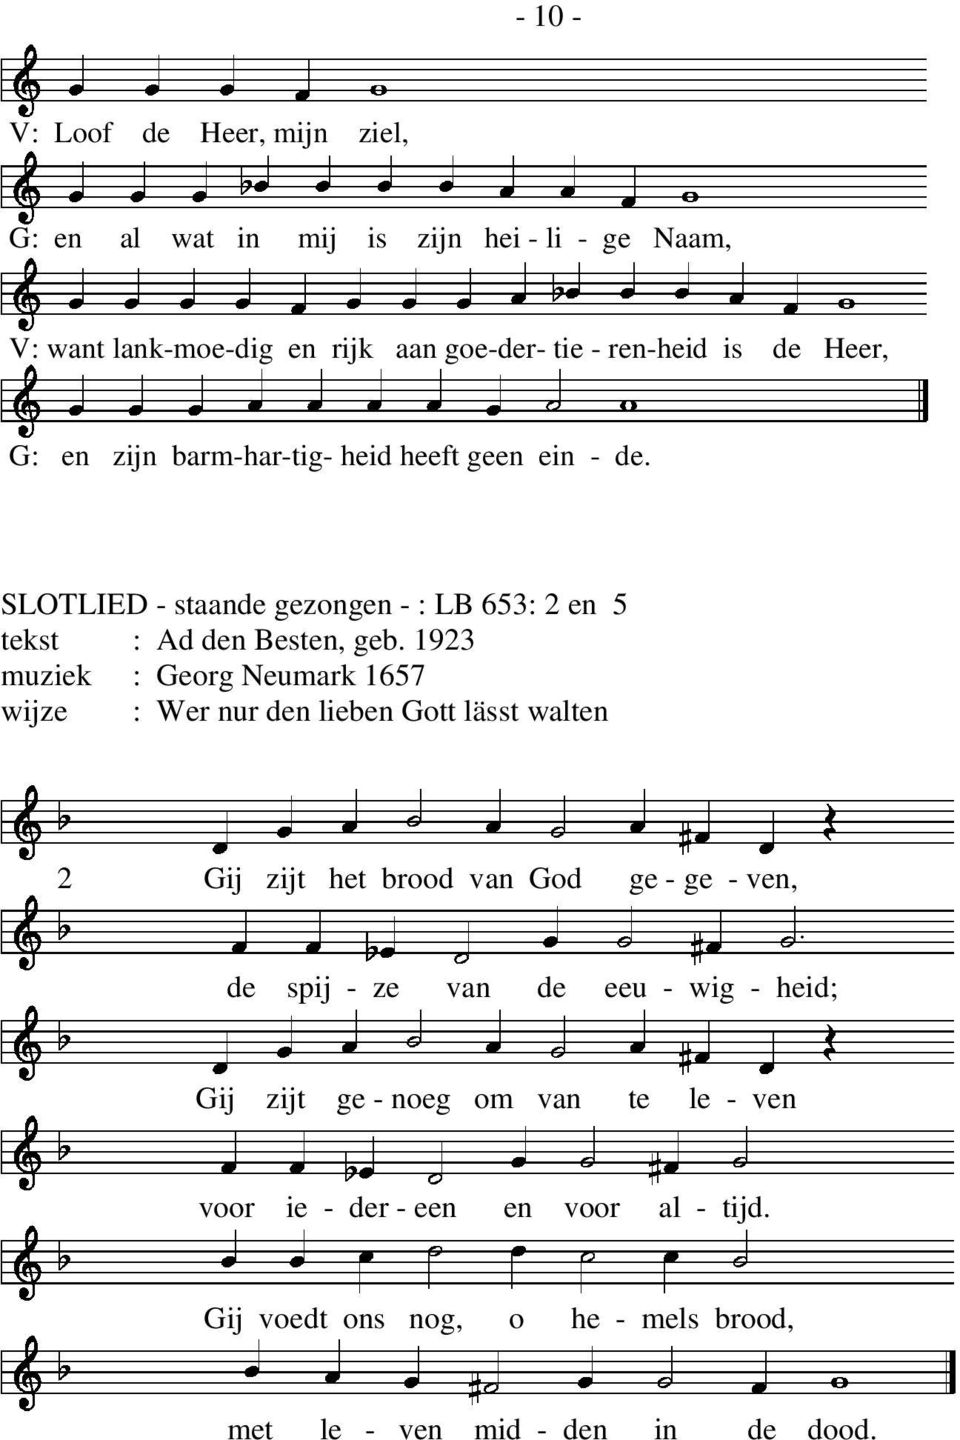 1923 muziek : Georg Neumark 1657 wijze : Wer nur den lieben Gott lässt walten 2 Gij zijt het brood van God ge - ge - ven, de spij - ze van de eeu